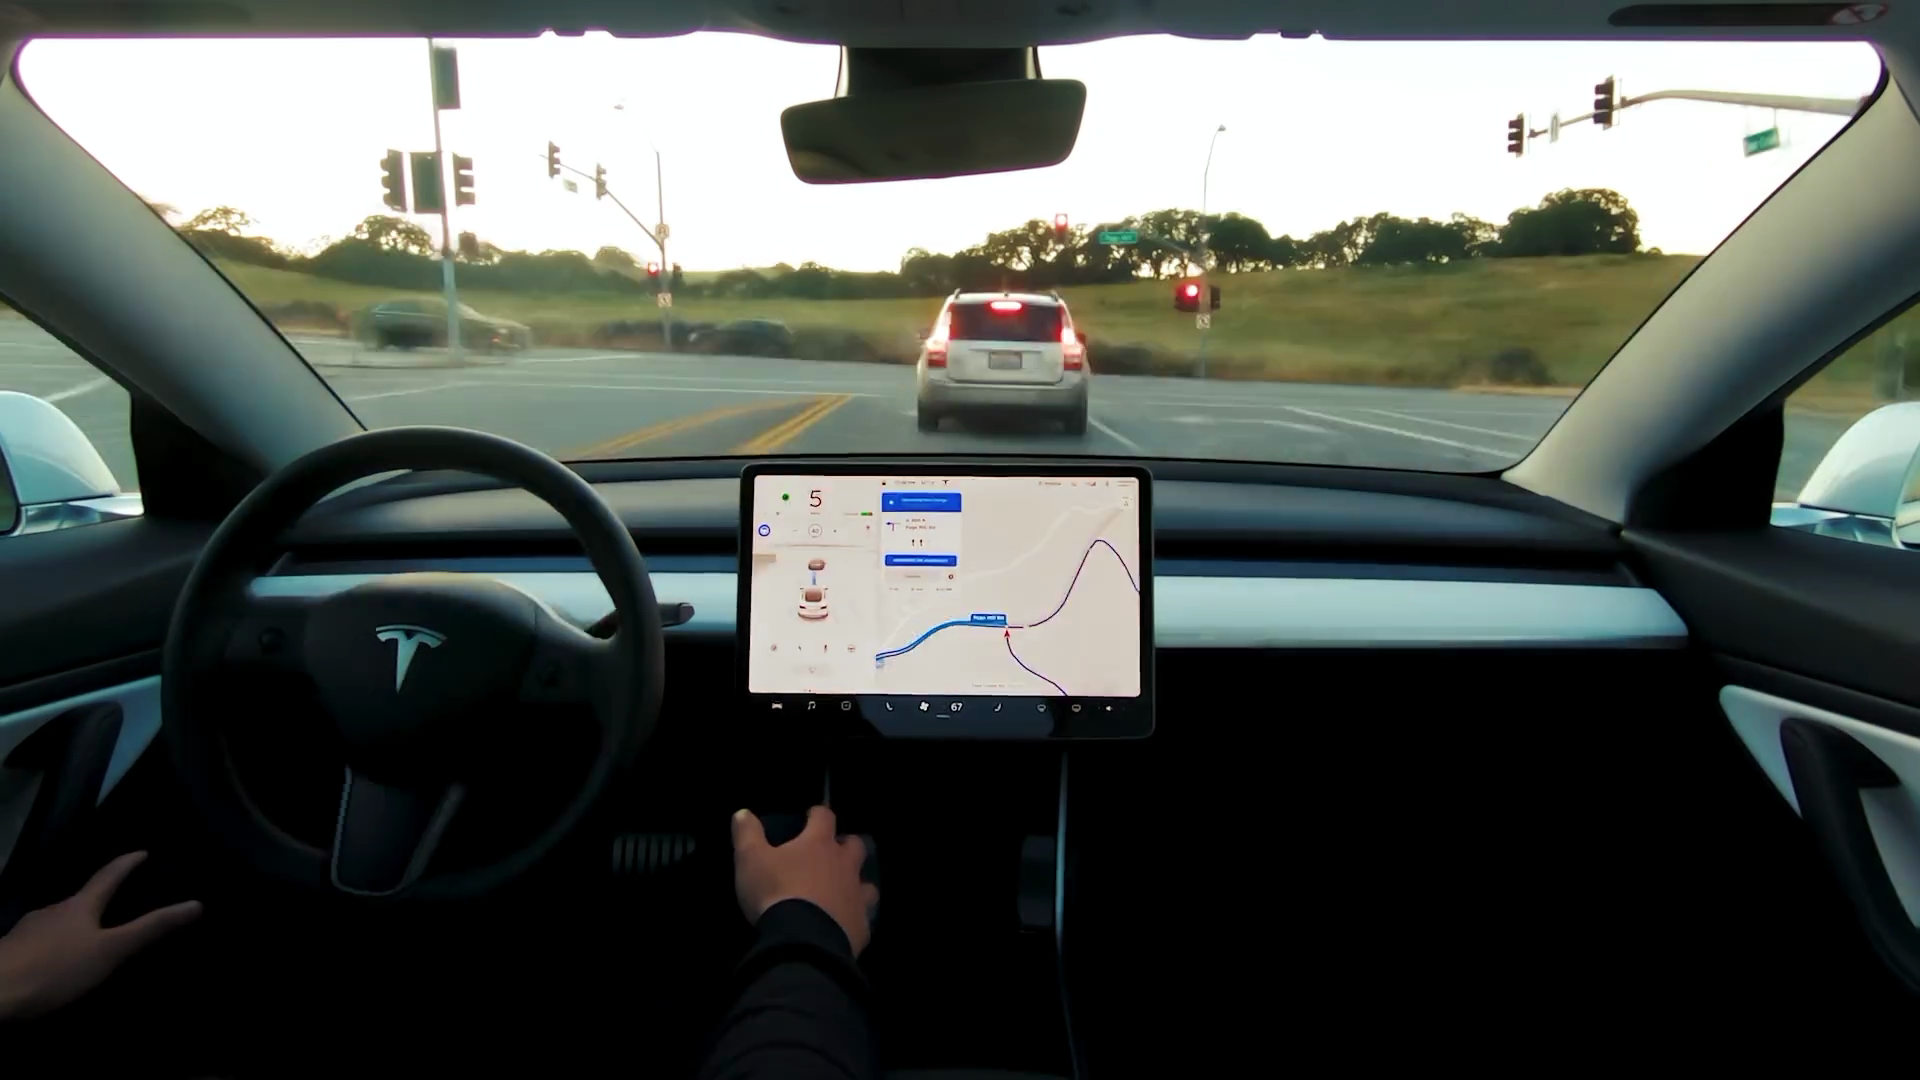 ยังไงกัน!! วิศวกร Tesla ยอมรับคลิปสาธิต Autopilot แท้จริงแล้ว “จัดฉาก” ตามคำสั่ง Elon Musk